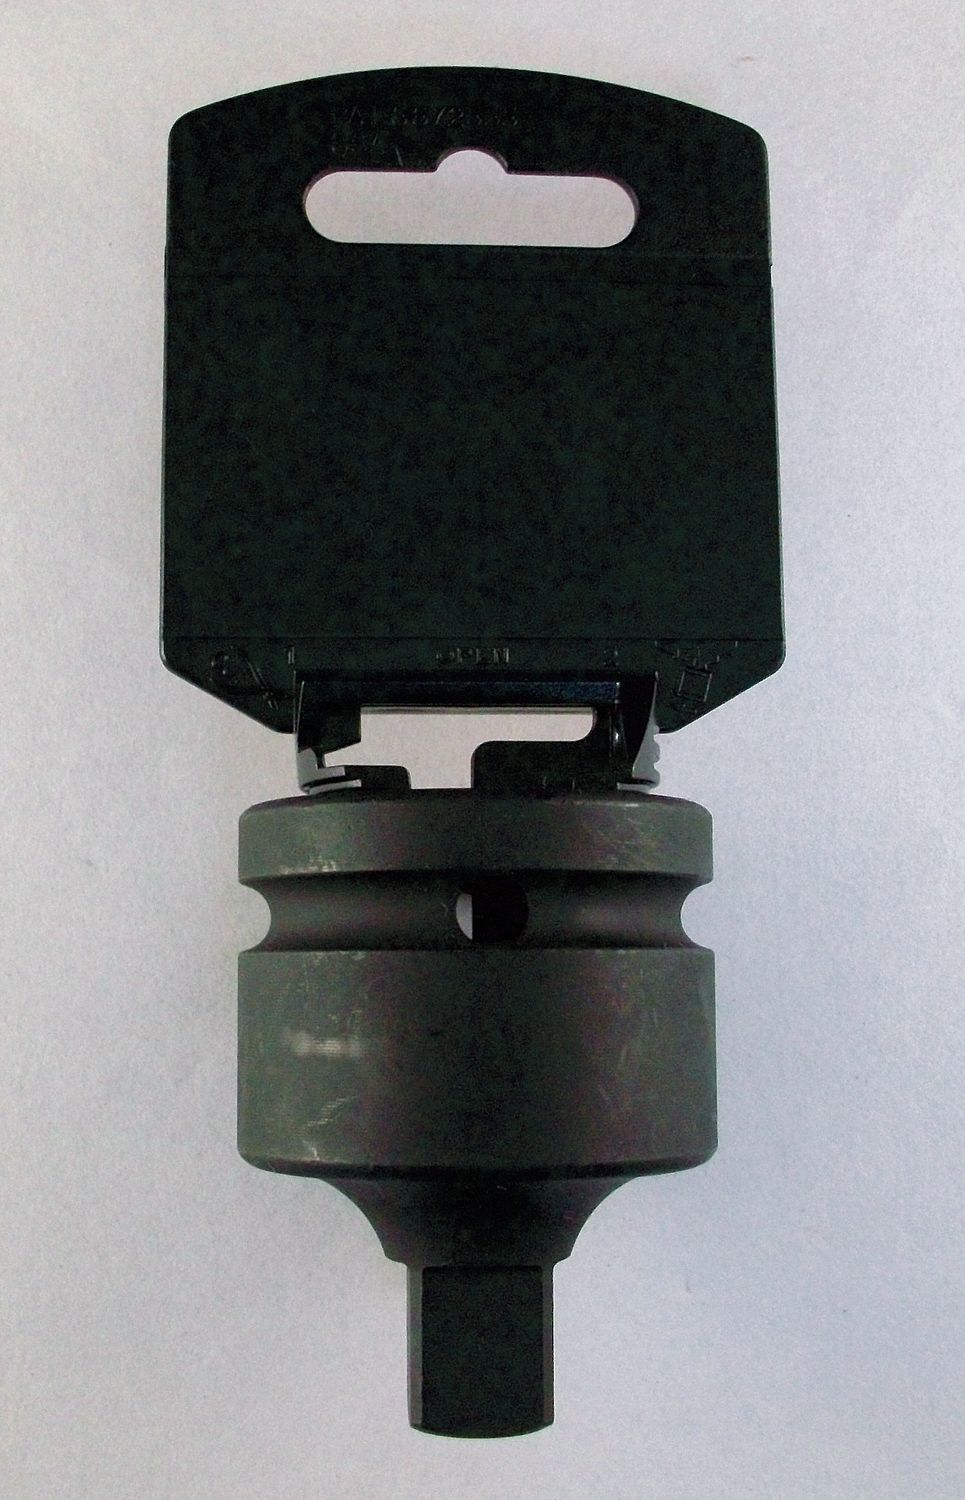 4PRC9 - Impact Socket Adapter 1 Dr 3 L